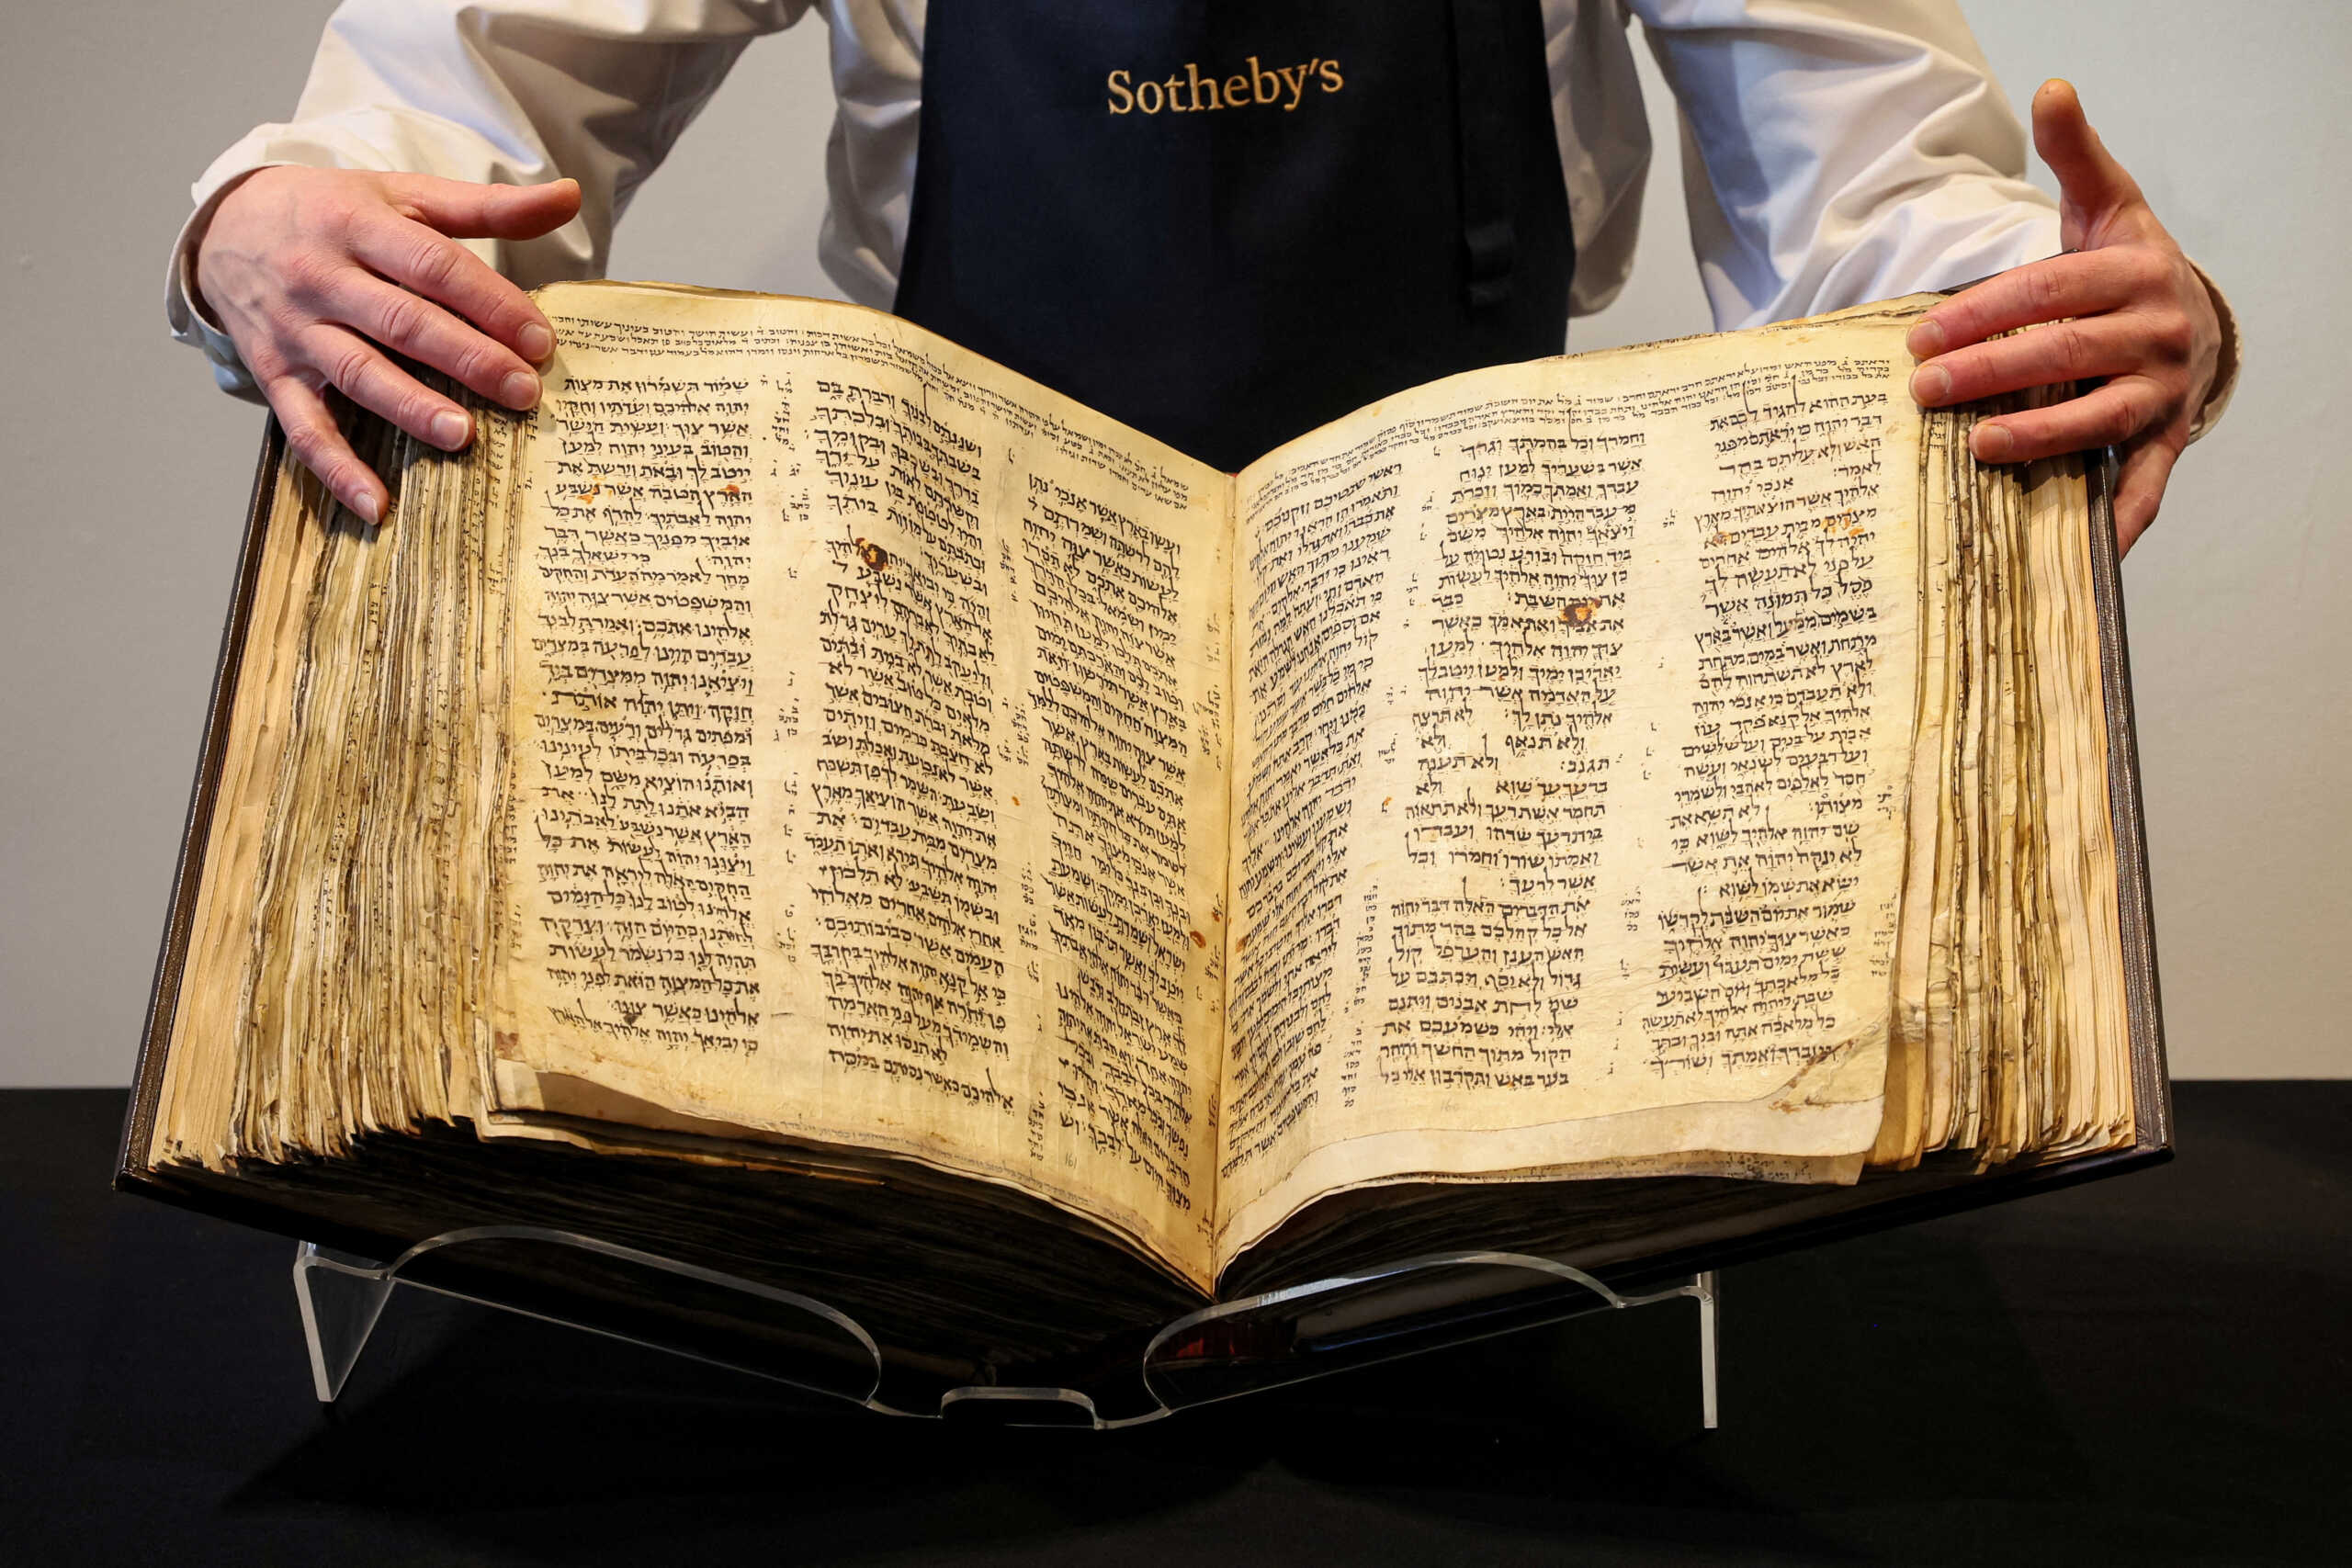 Σε δημοπρασία η αρχαιότερη εβραϊκή Βίβλος που έχει βρεθεί ποτέ – Αναμένεται να πιάσει ποσό ρεκόρ για ιστορικά κείμενο